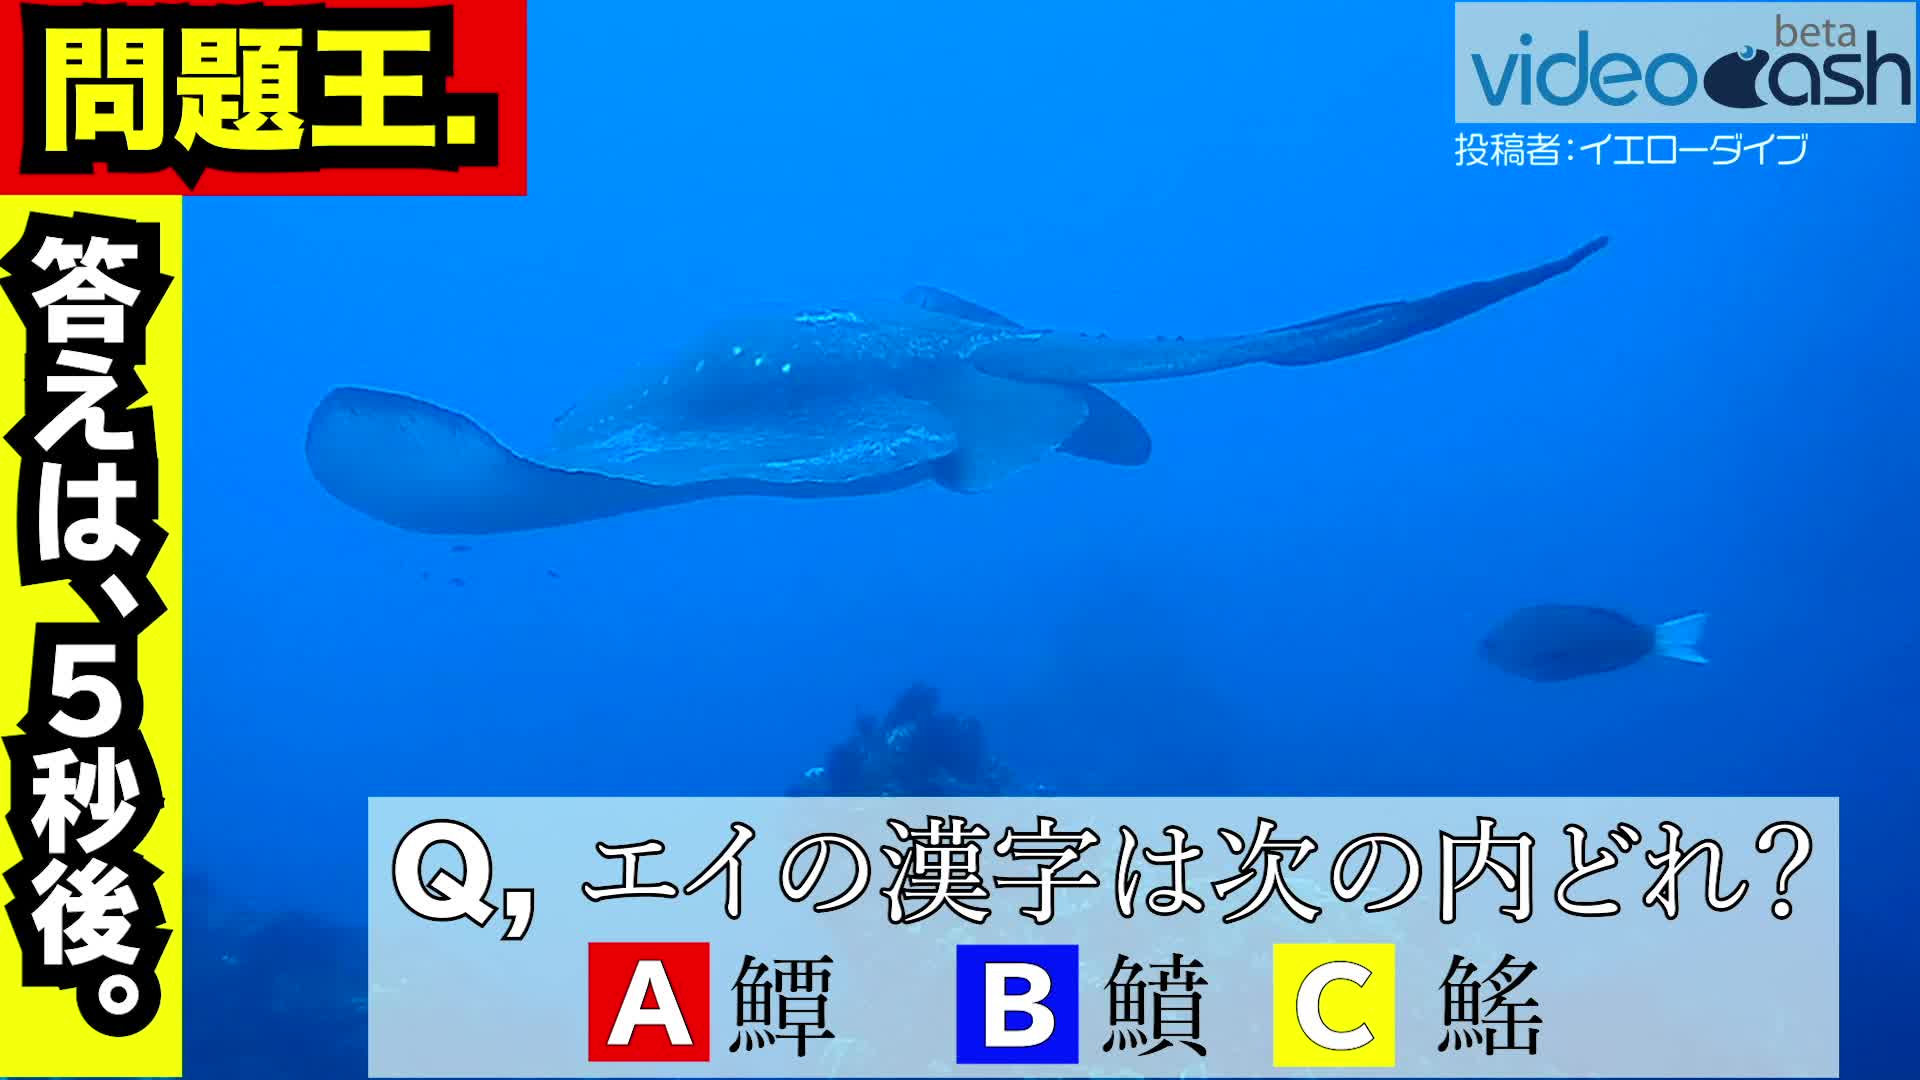 問題です 鱏 鱝 鰩 魚のエイの漢字は次のどれでしょうか Videocash ビデオキャッシュ Yahoo Japan